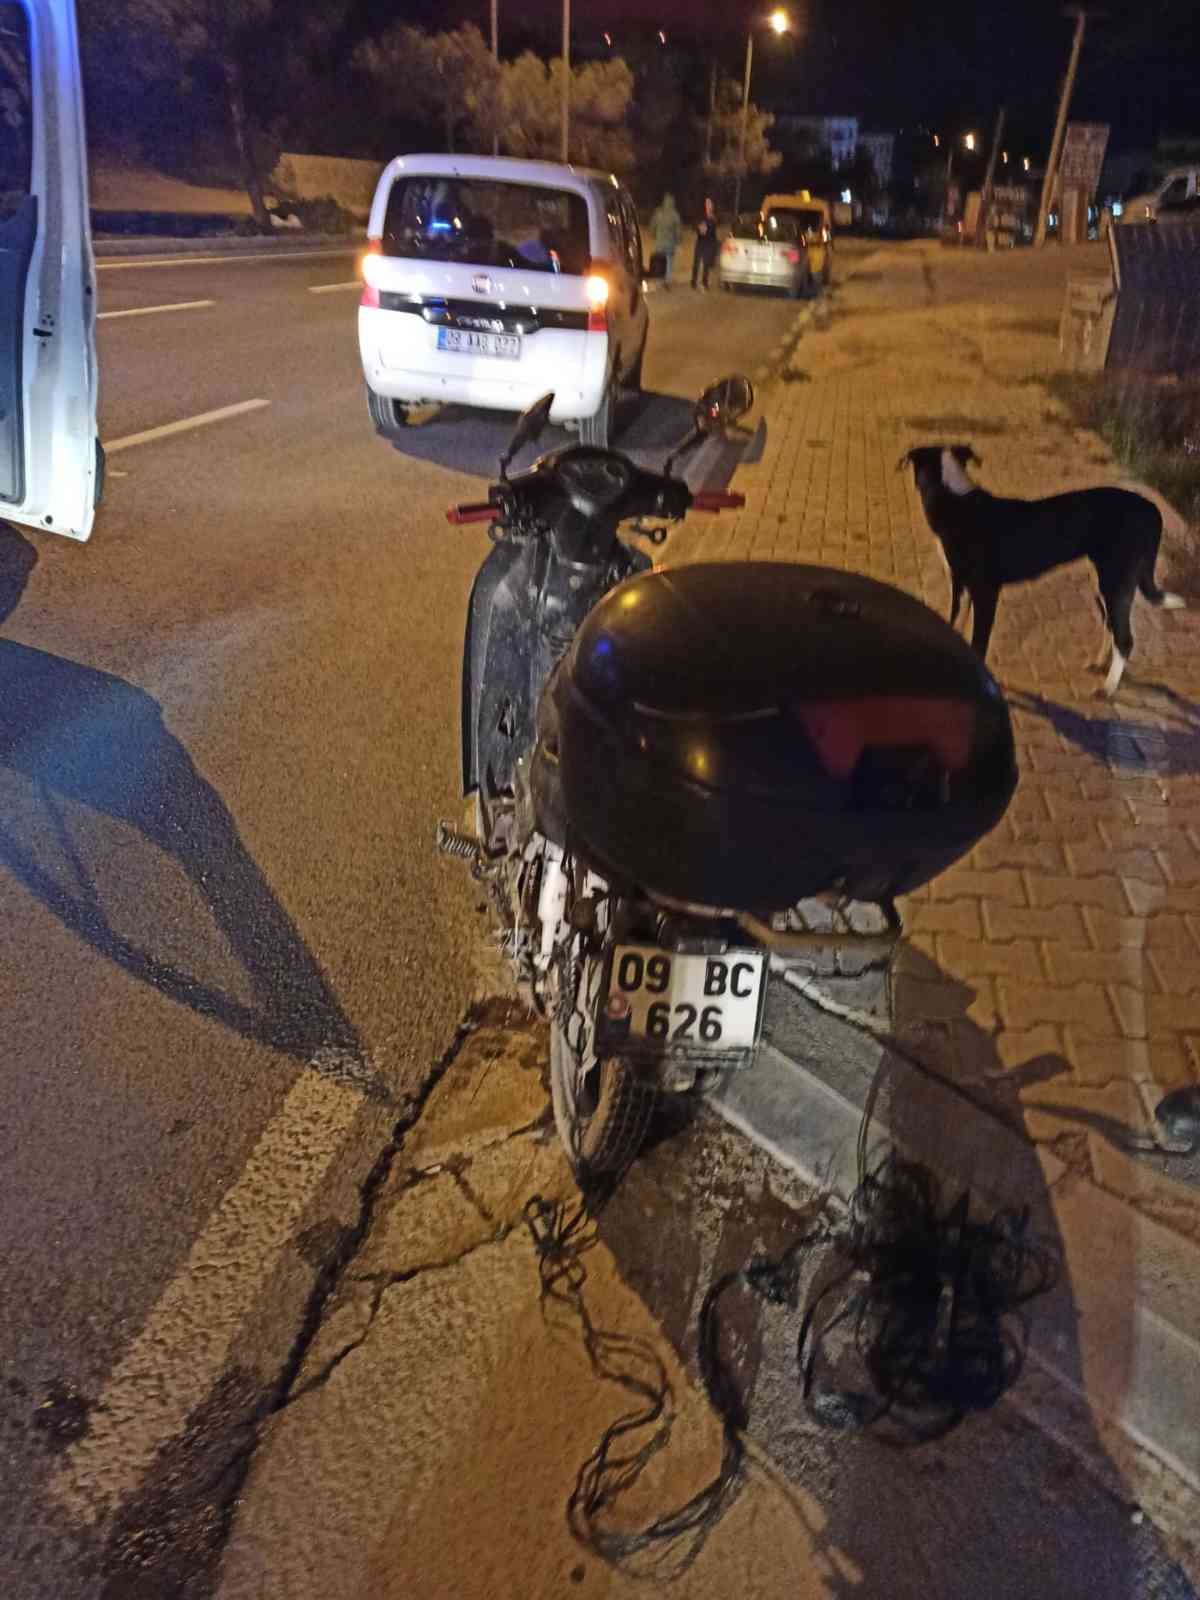 Kuşadası’nda motosiklet kazası: 1 ağır yaralı #aydin